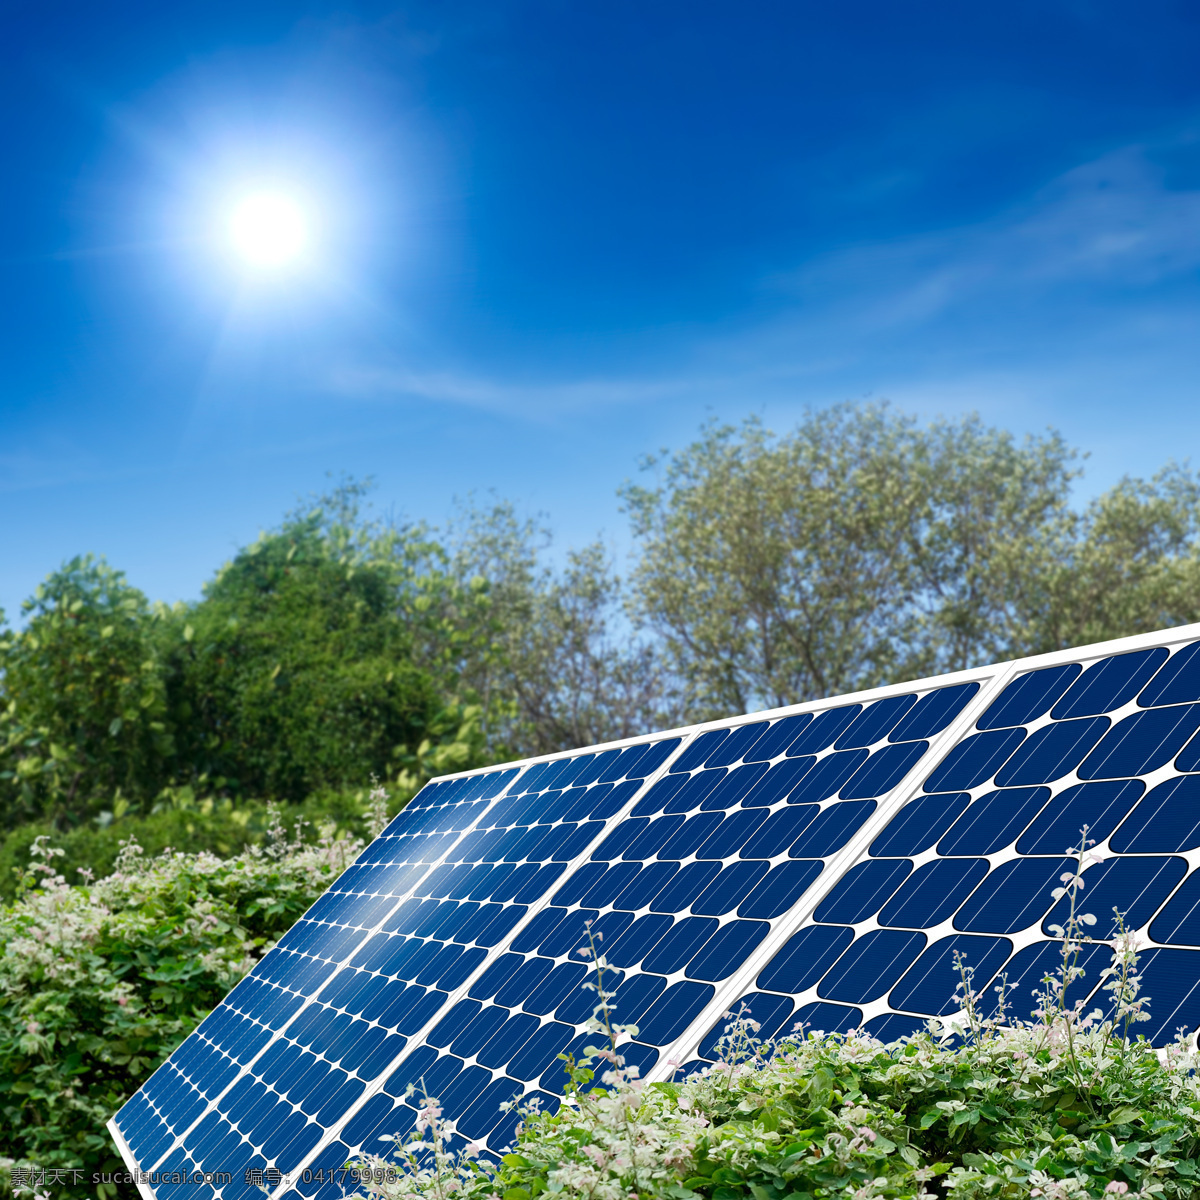 蓝天 下 太阳能 板 树木 太阳能板 能源 绿色 环保 创意 其他类别 环境家居